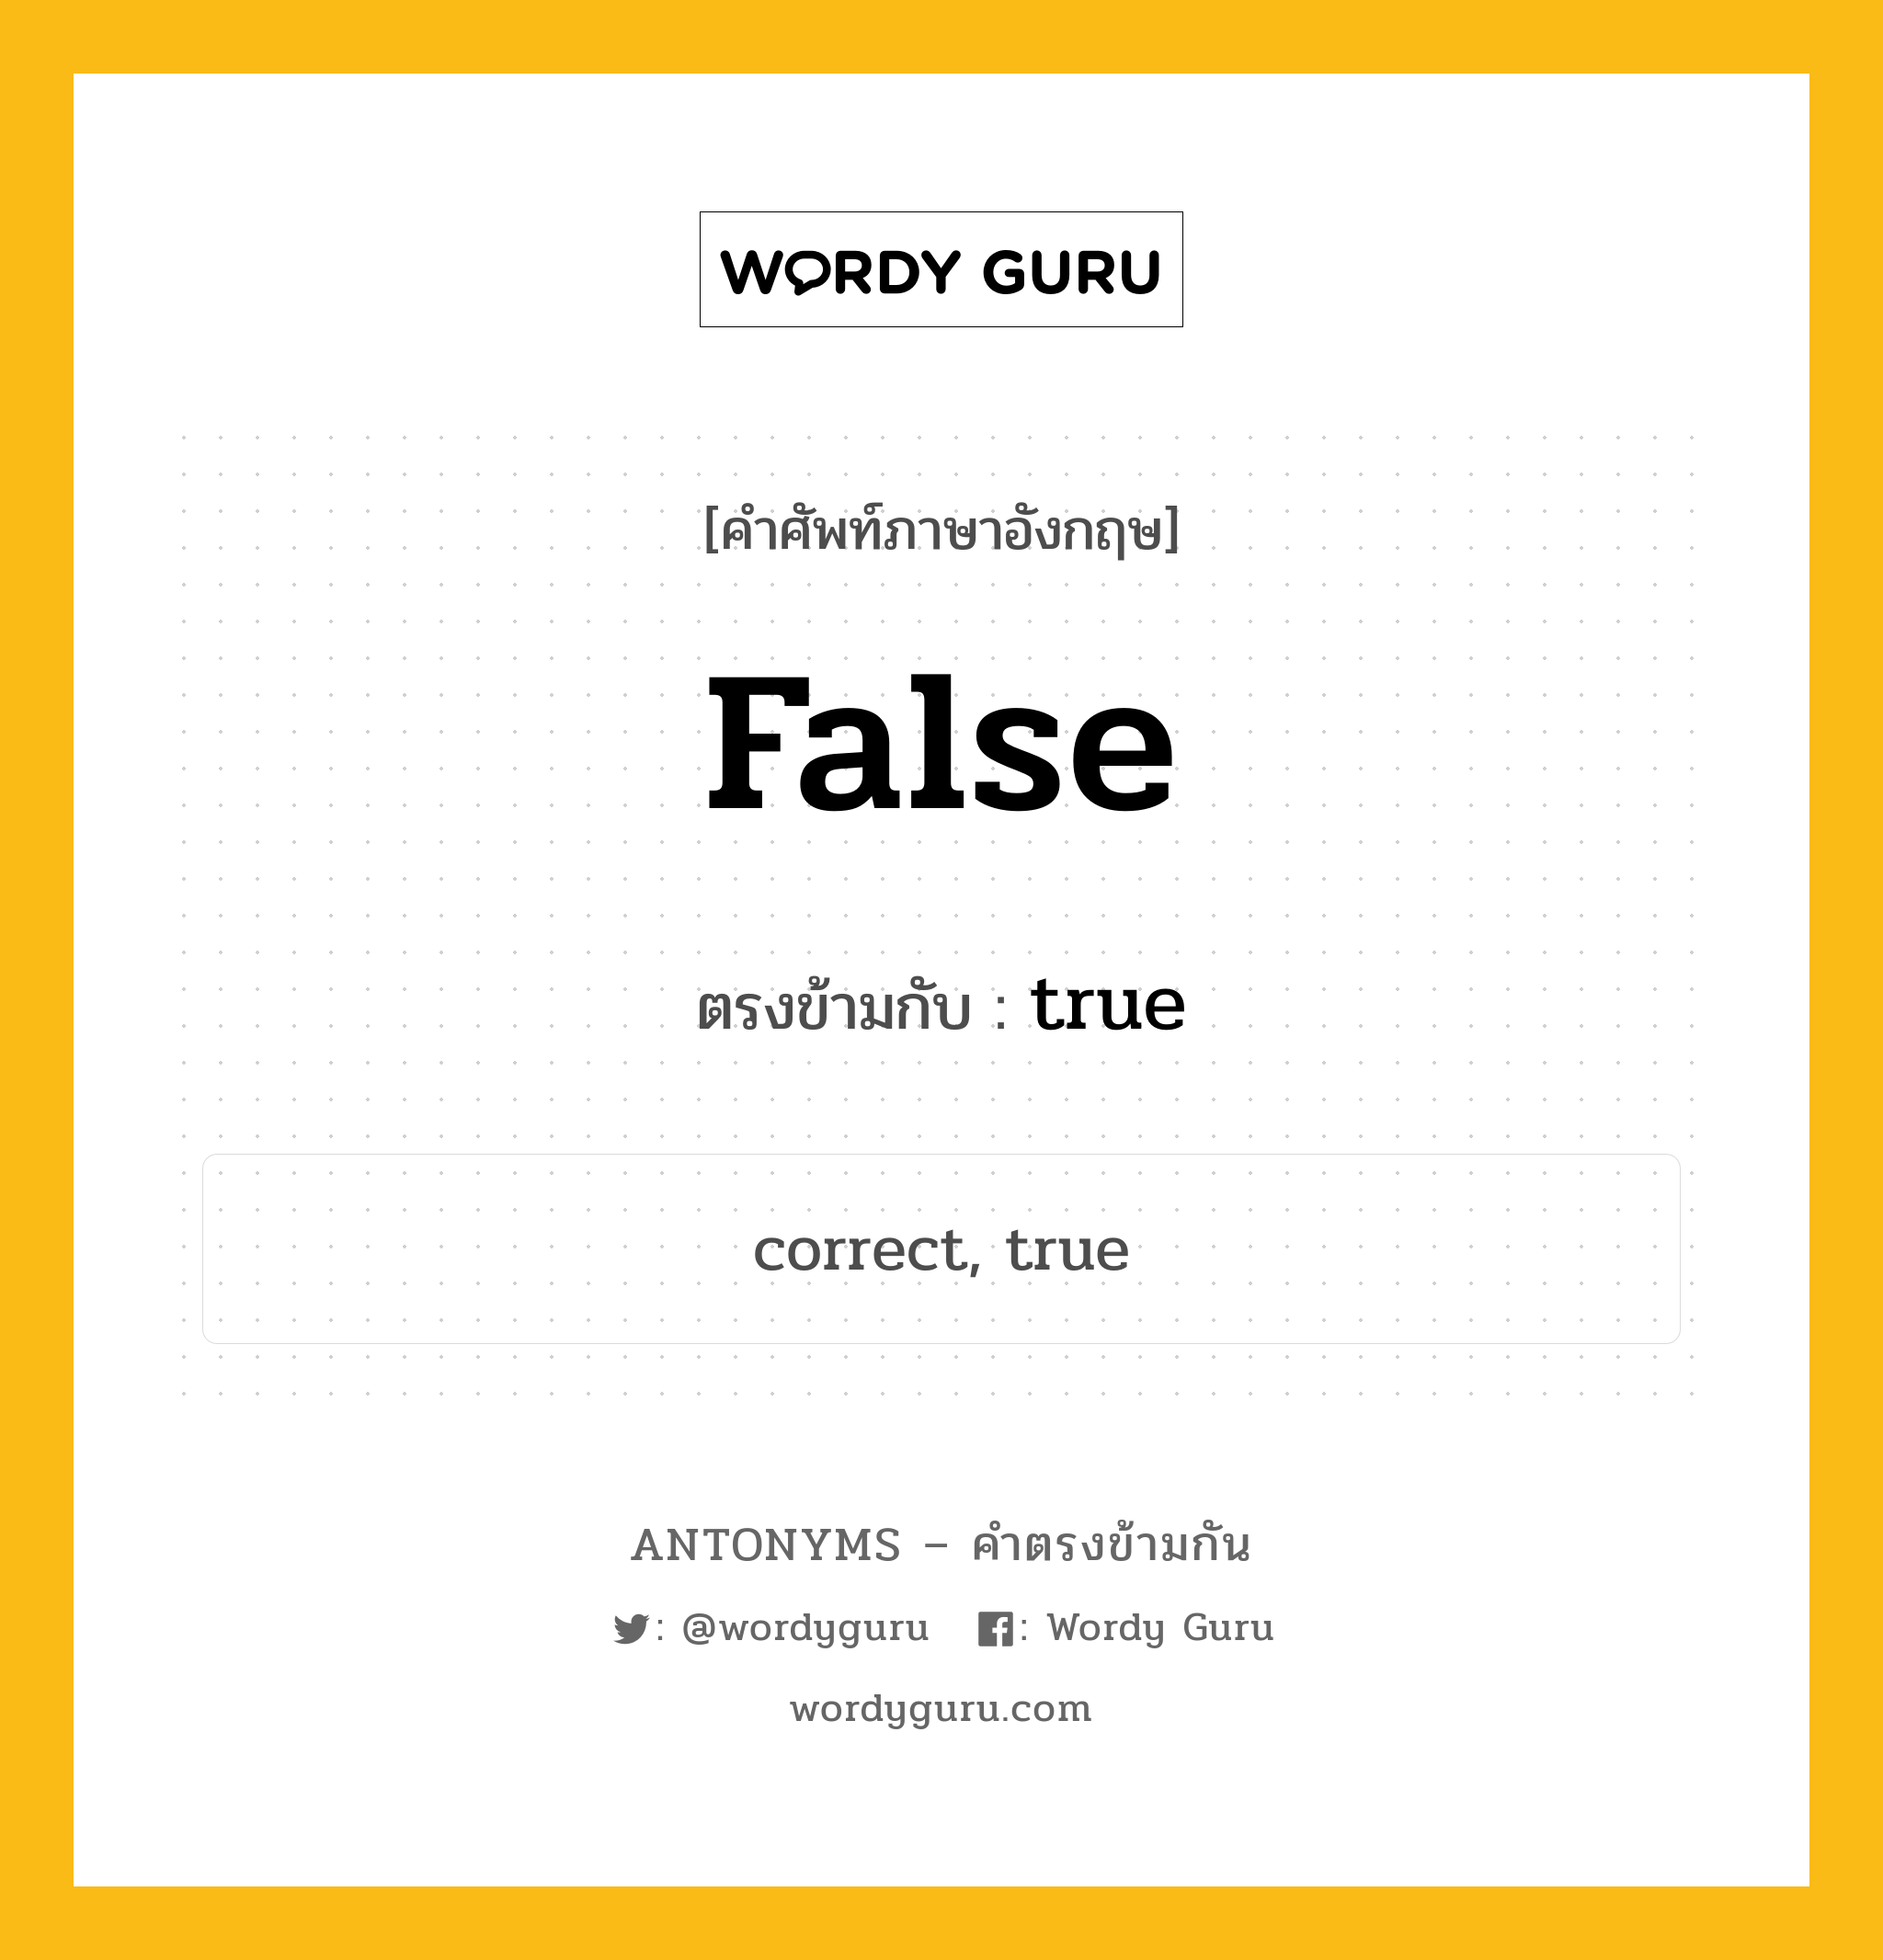 false เป็นคำตรงข้ามกับคำไหนบ้าง?, คำศัพท์ภาษาอังกฤษ false ตรงข้ามกับ true หมวด true